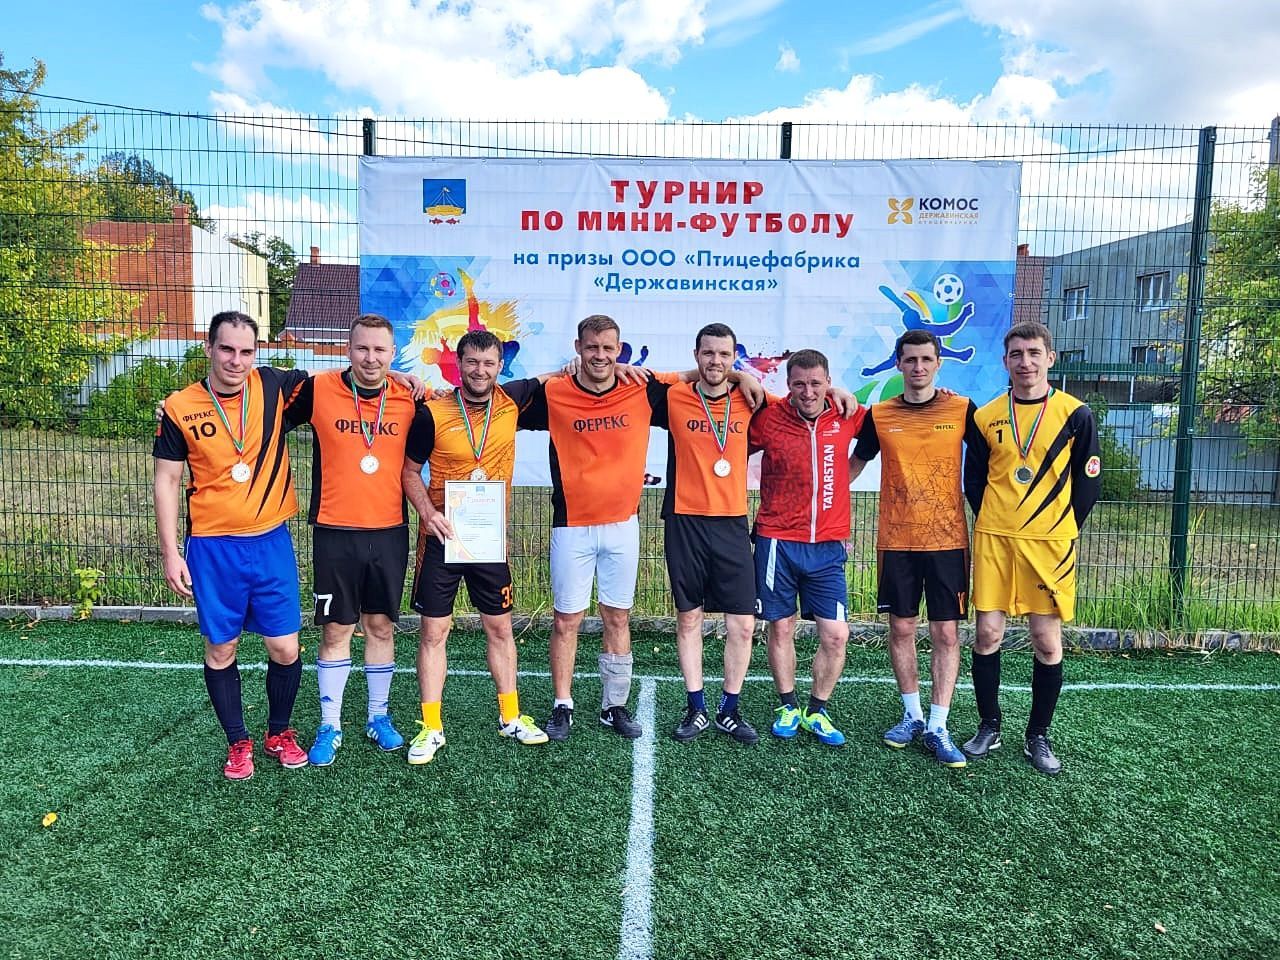 «Державинская» кош фабрикасы призларына мини-футбол буенча турнир нәтиҗәләре